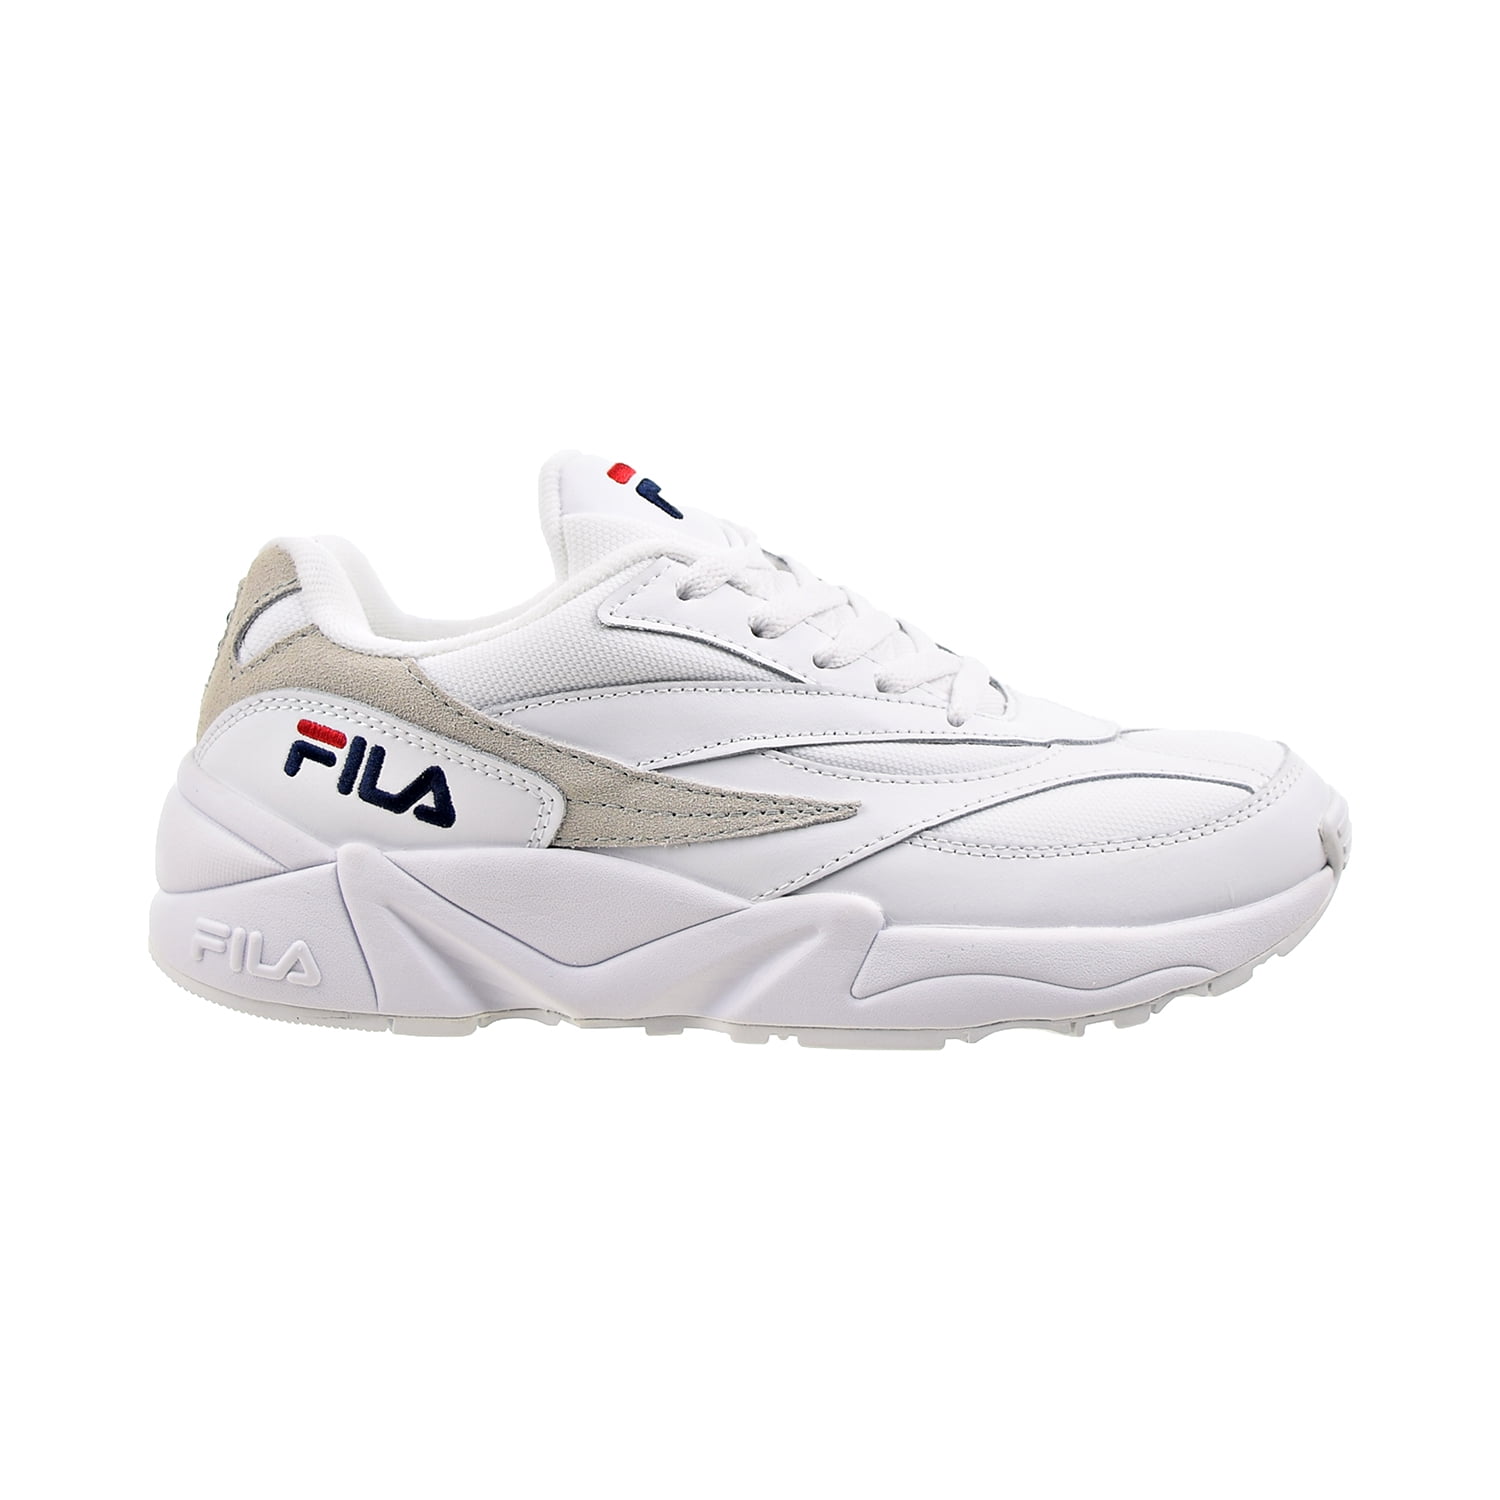 Fila V94M Men's Shoes White-Fila Red - Walmart.com